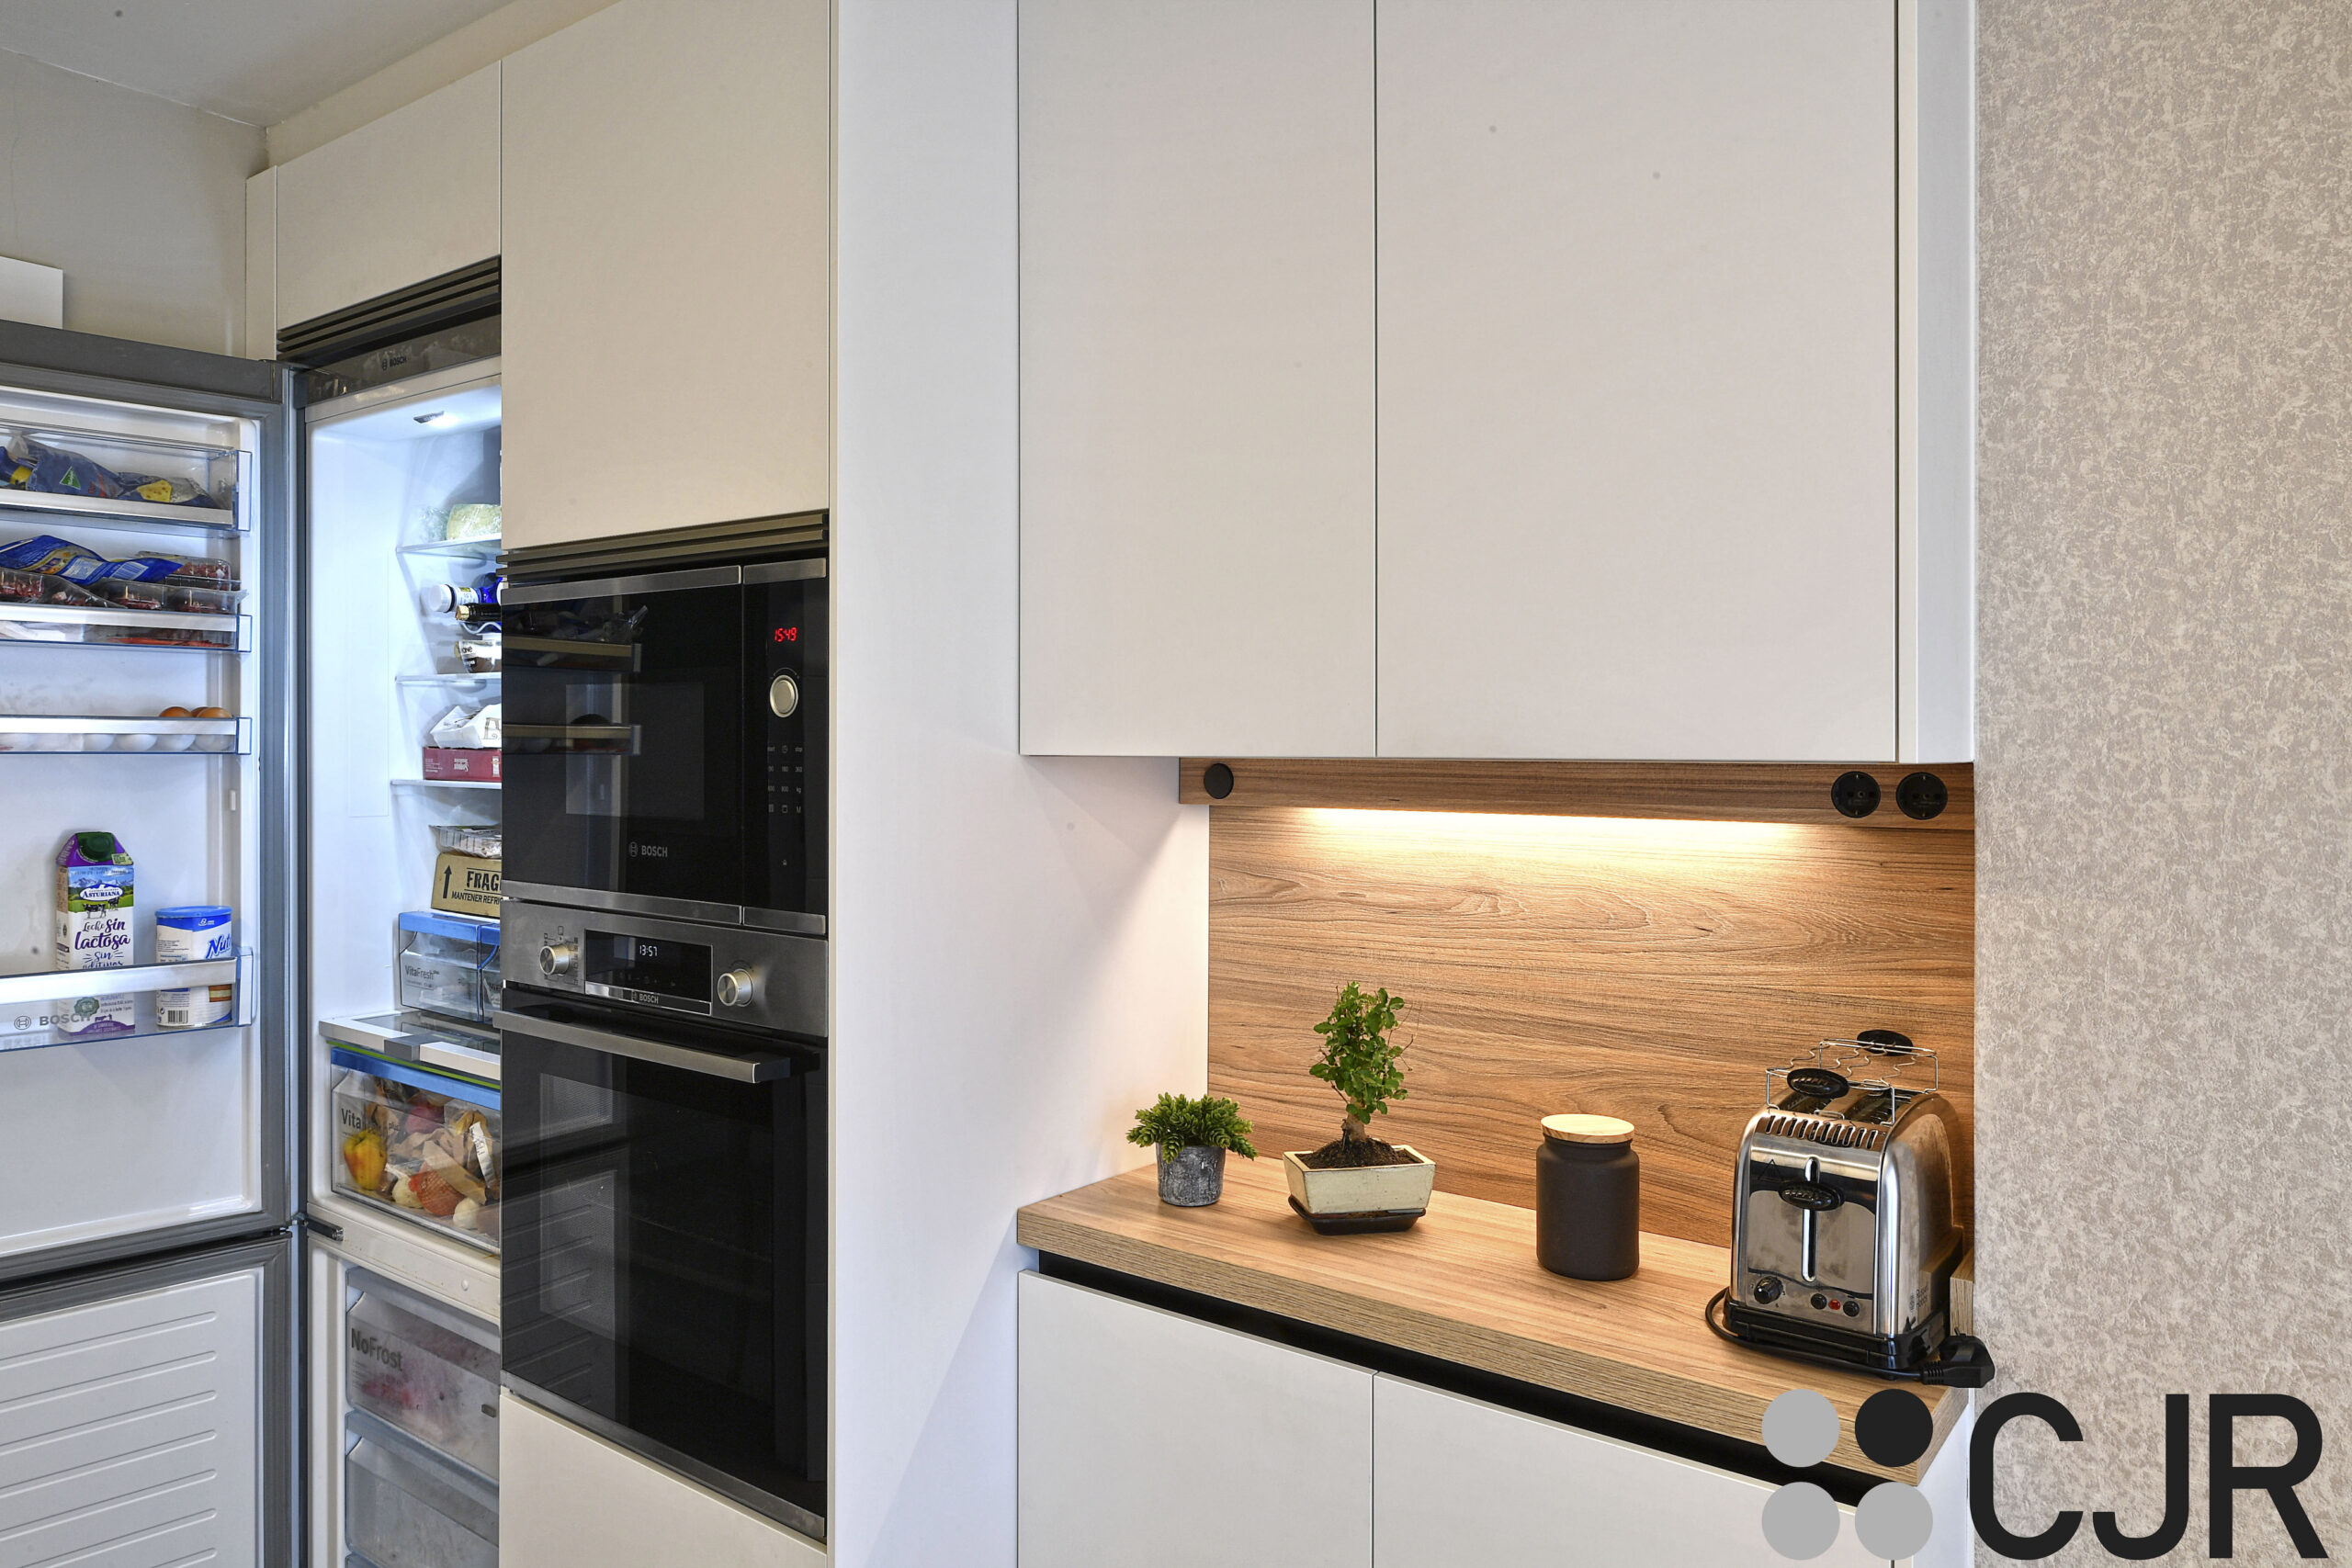 frigorifico de bosch amplio en cocina blanca y madera ne dos frentes cocinas cjr